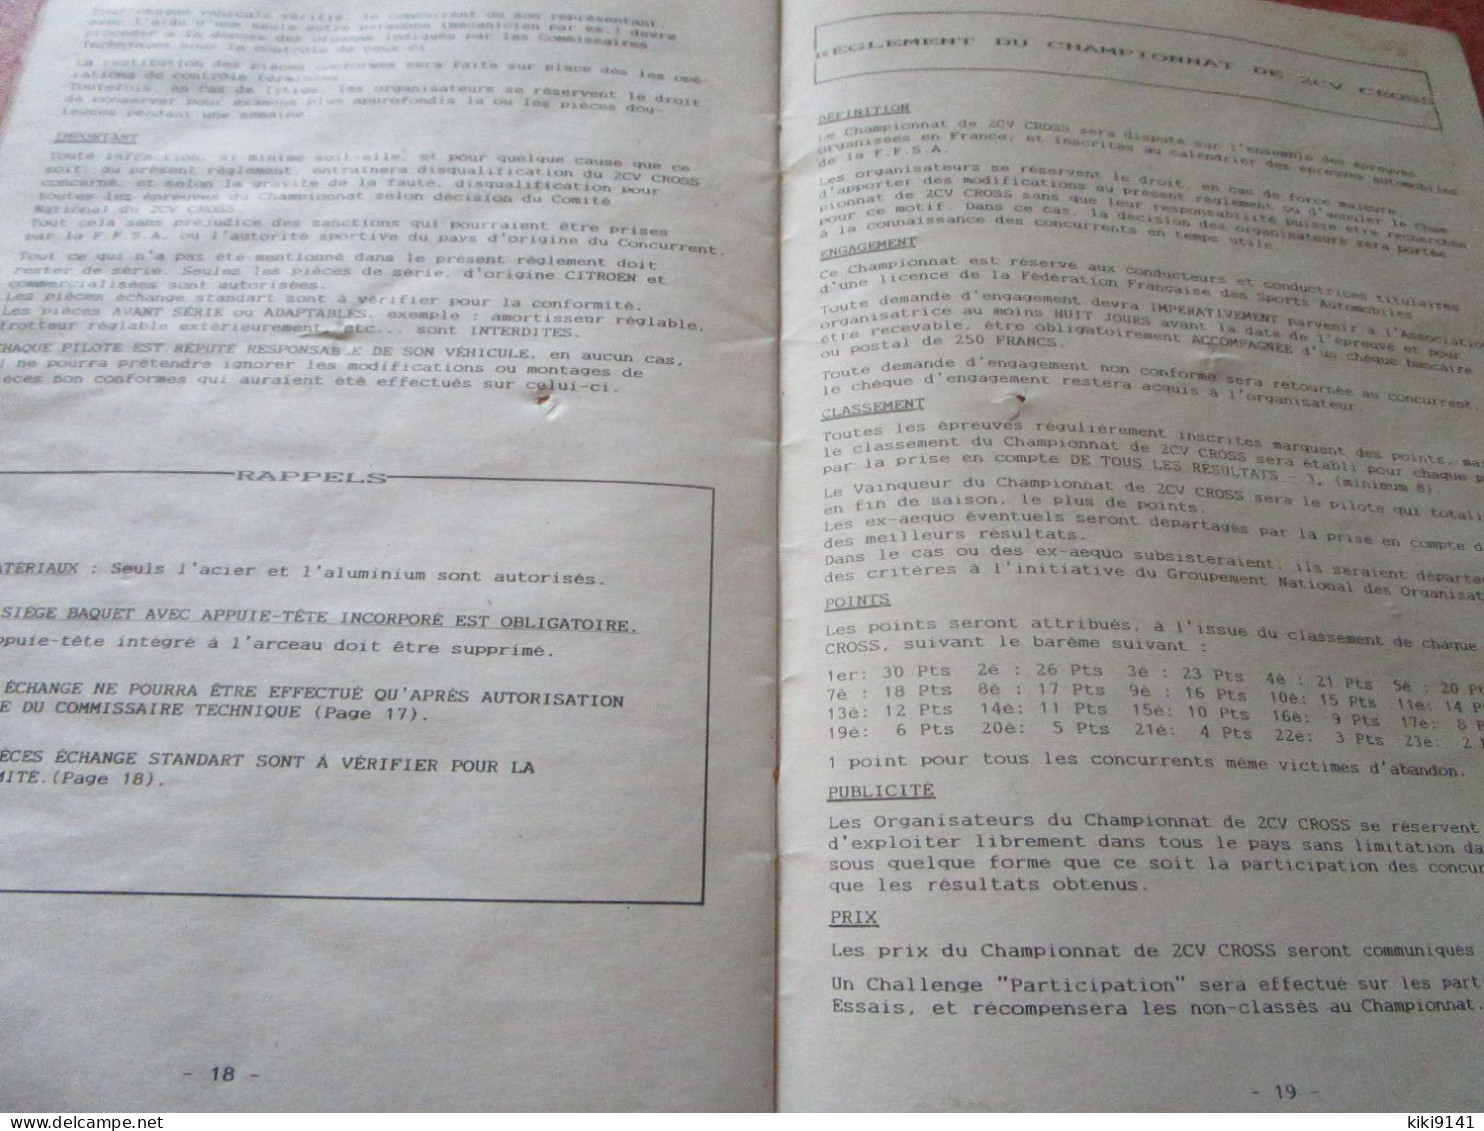 2CV CROSS Groupement - Règlement 1990 (20 pages)